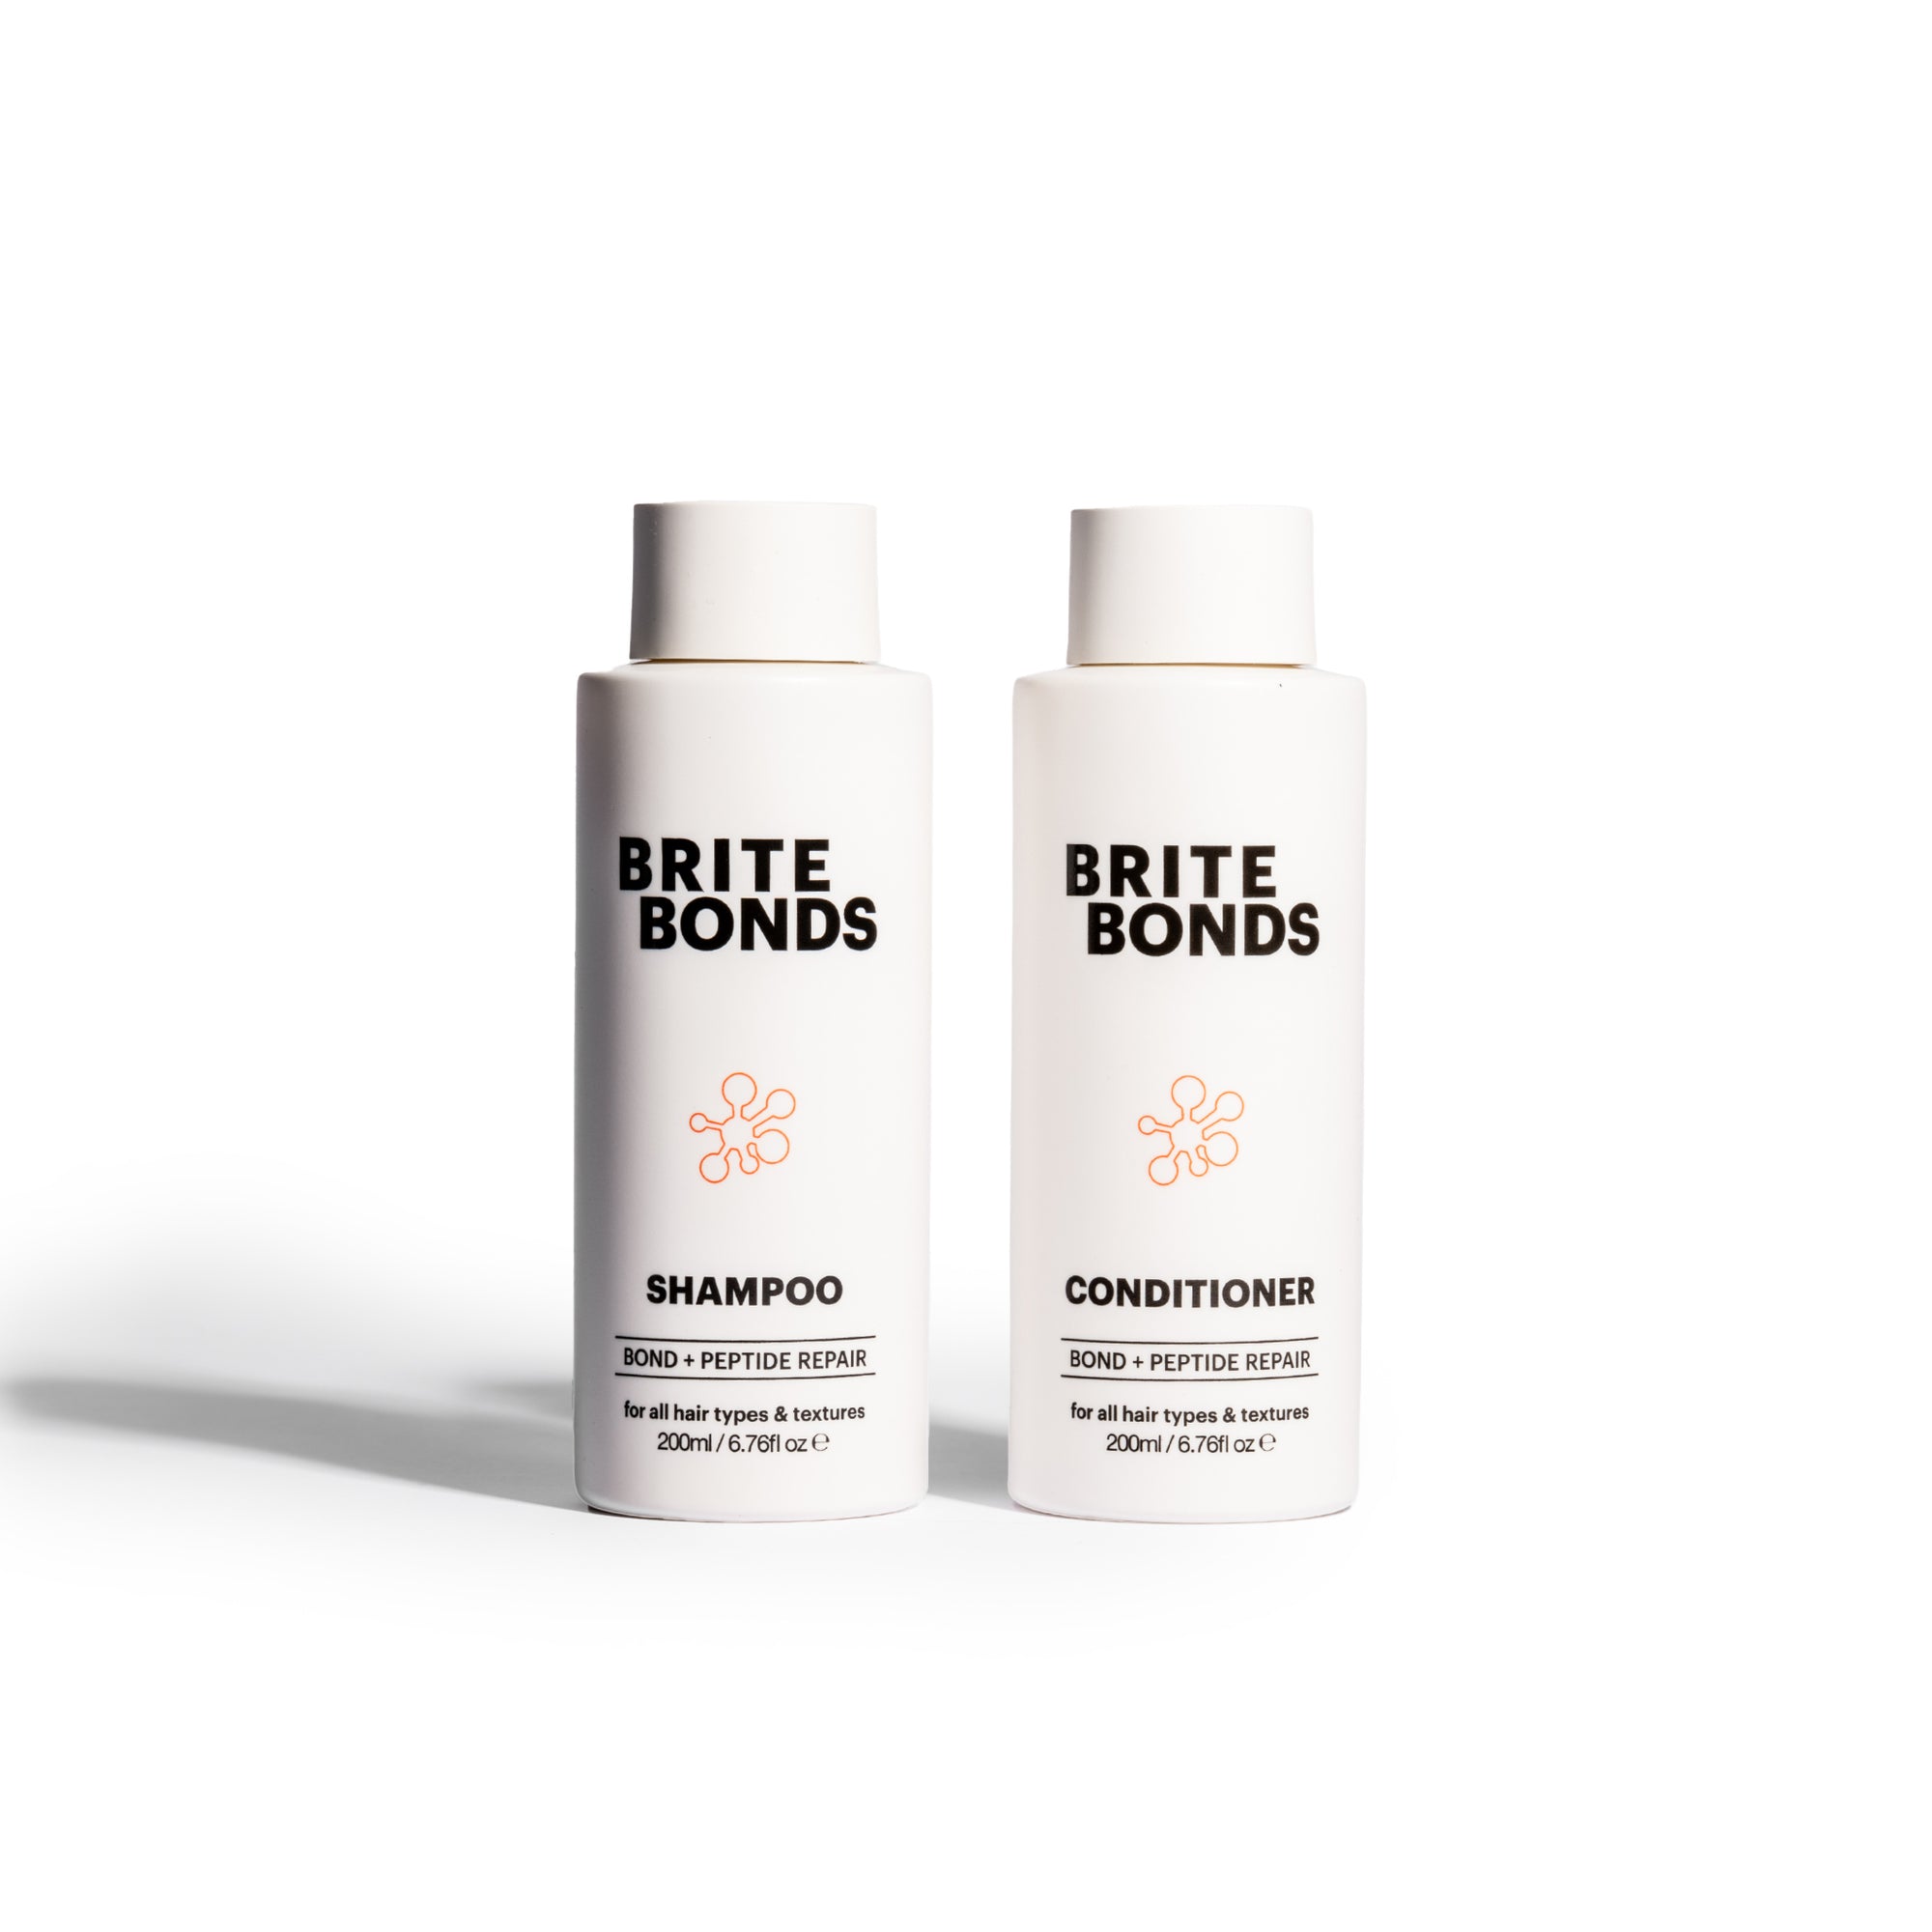 Brite Bonds: Shampoo + Conditioner Repair Duo